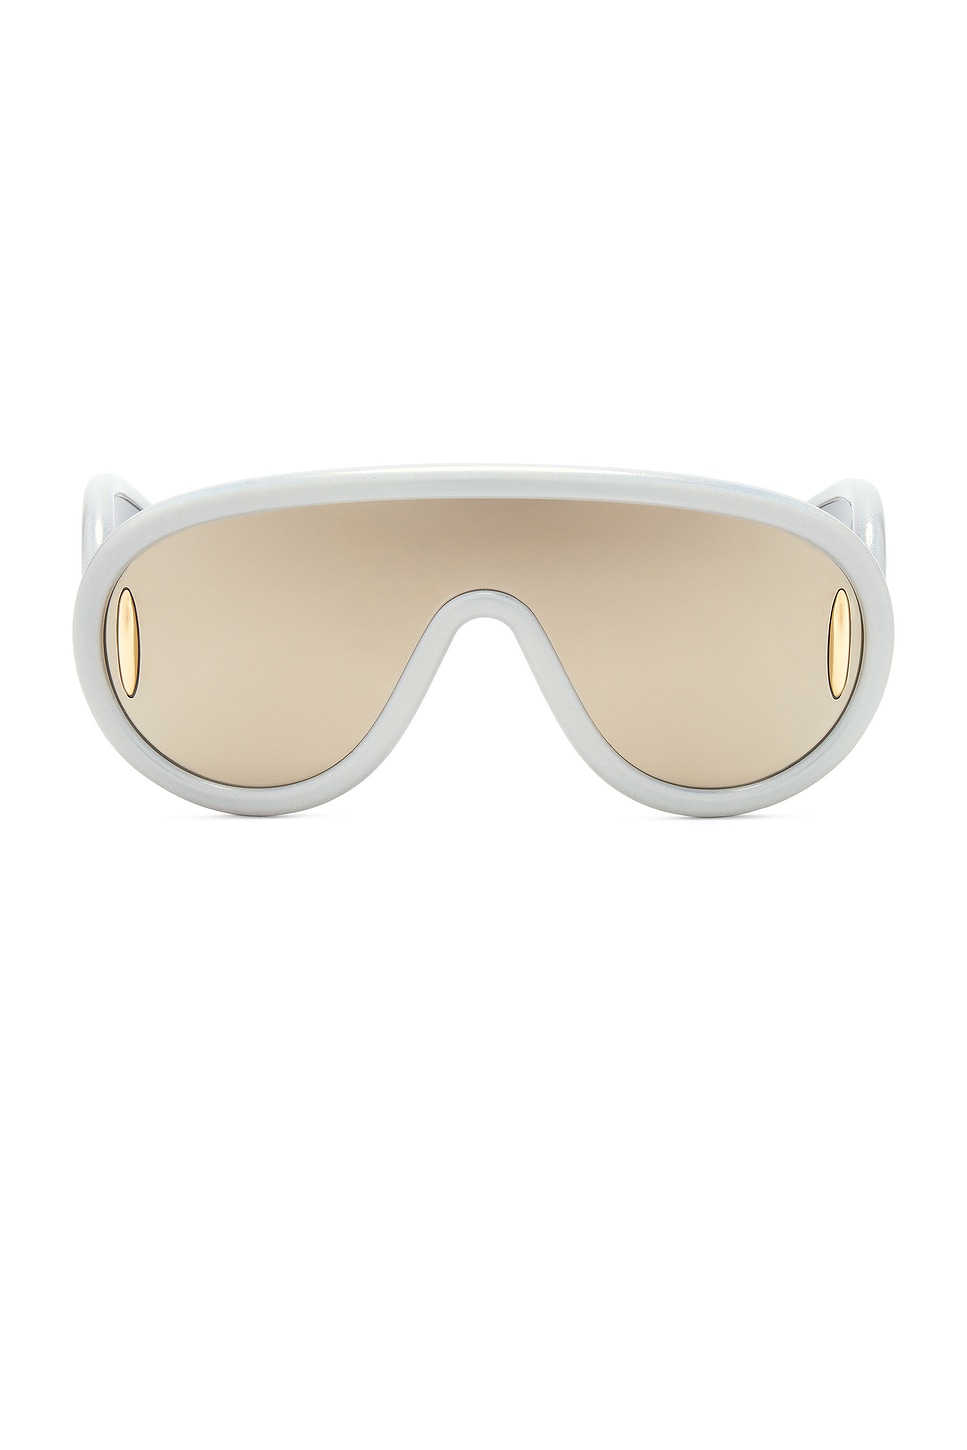 Loewe Shield Sunglasses In White